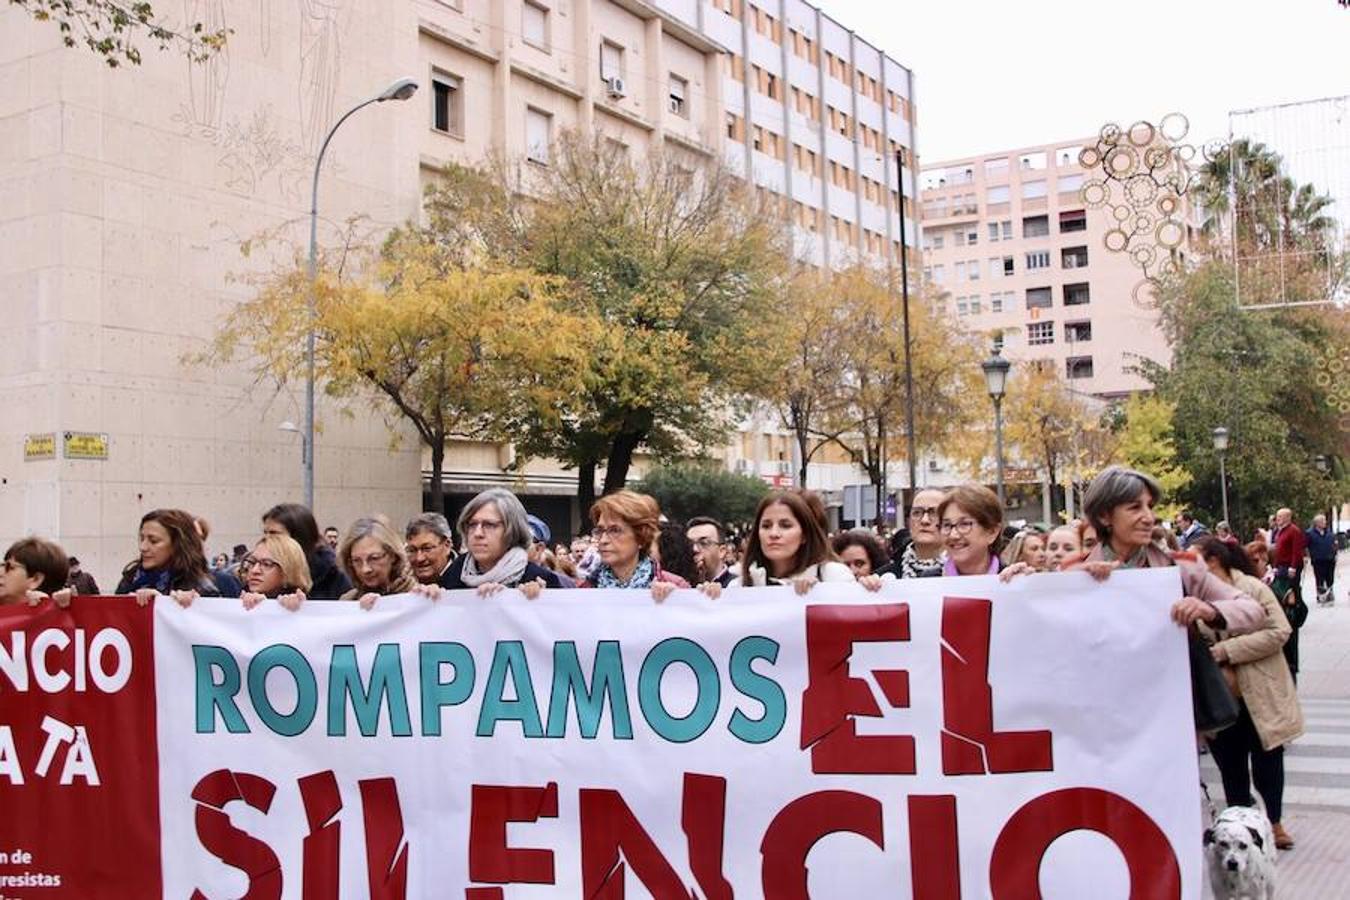 La marcha celebrada en Badajoz contra la violencia de género, en imágenes